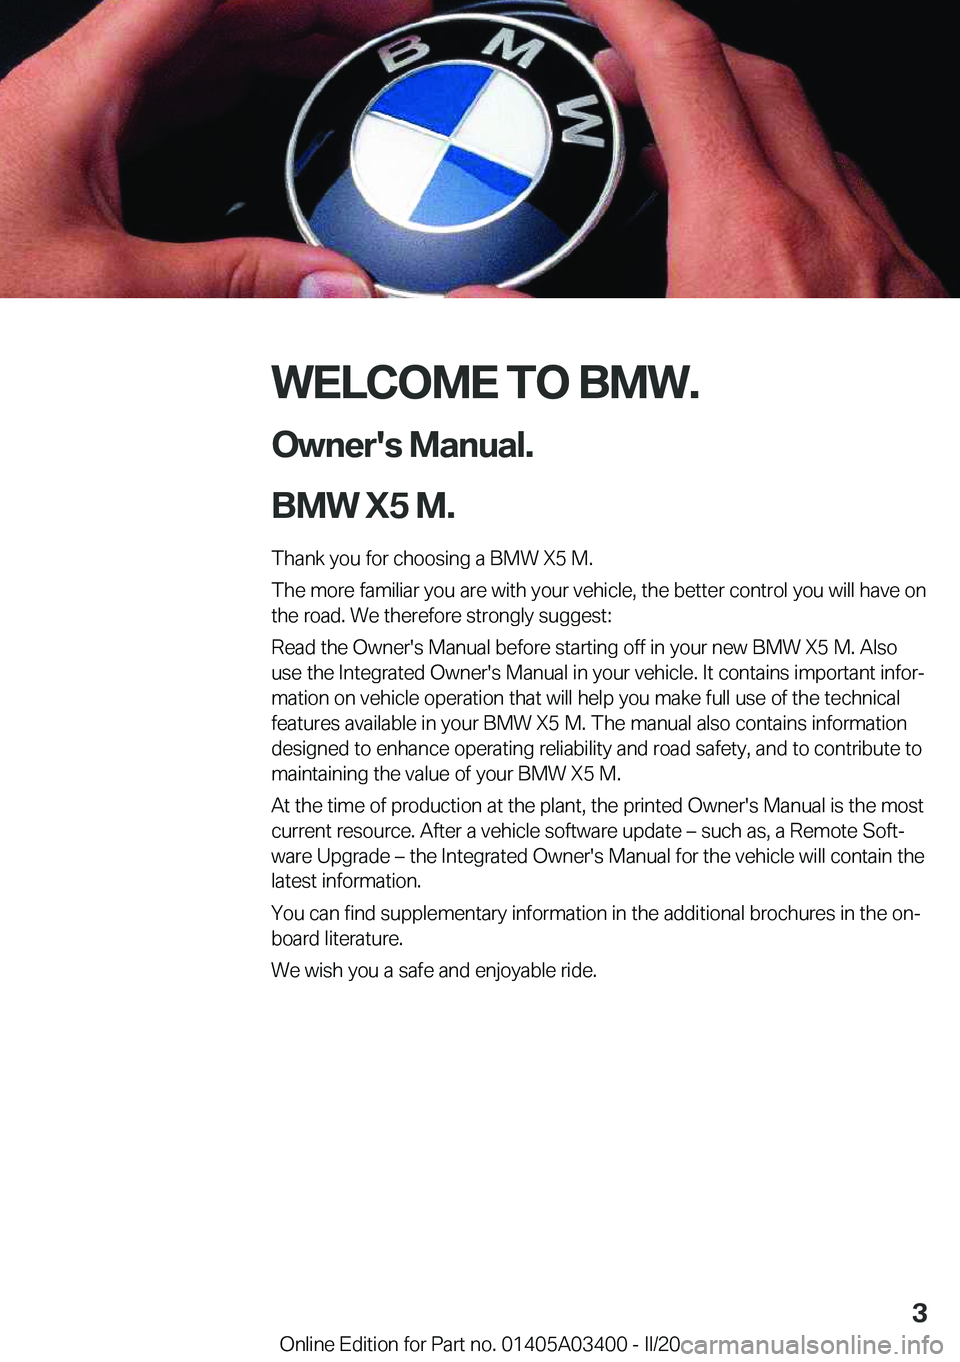 BMW X5M 2020  Owners Manual �W�E�L�C�O�M�E��T�O��B�M�W�.�O�w�n�e�r�'�s��M�a�n�u�a�l�.
�B�M�W��X�5��M�.
�T�h�a�n�k��y�o�u��f�o�r��c�h�o�o�s�i�n�g��a��B�M�W��X�5��M�.
�T�h�e��m�o�r�e��f�a�m�i�l�i�a�r��y�o�u��a�